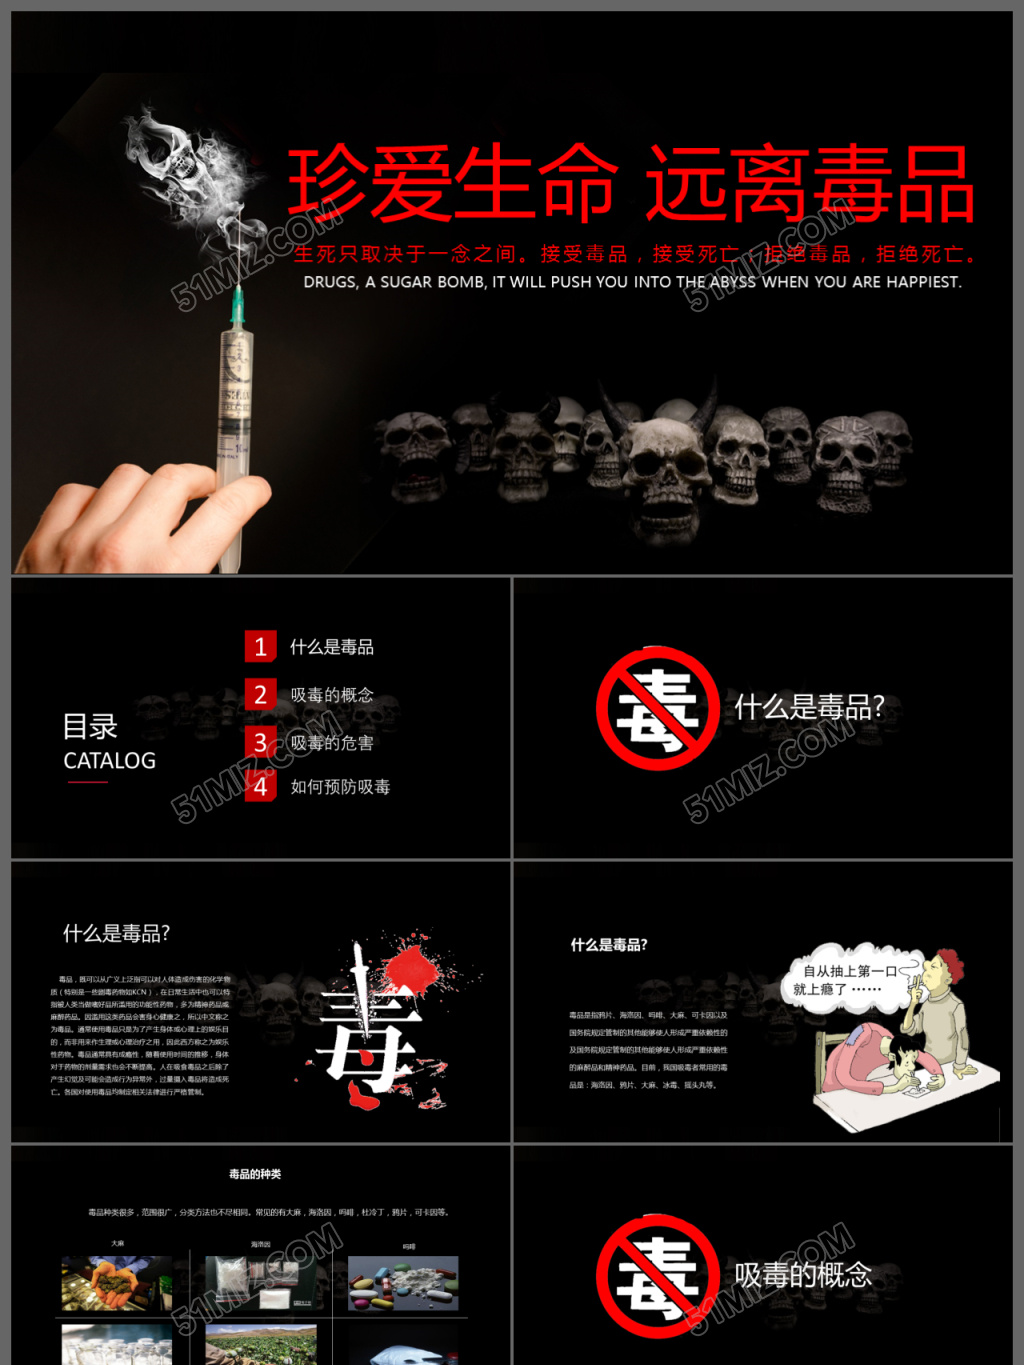 禁毒宣传海报-大星CG动漫工作室案例展示-一品威客网